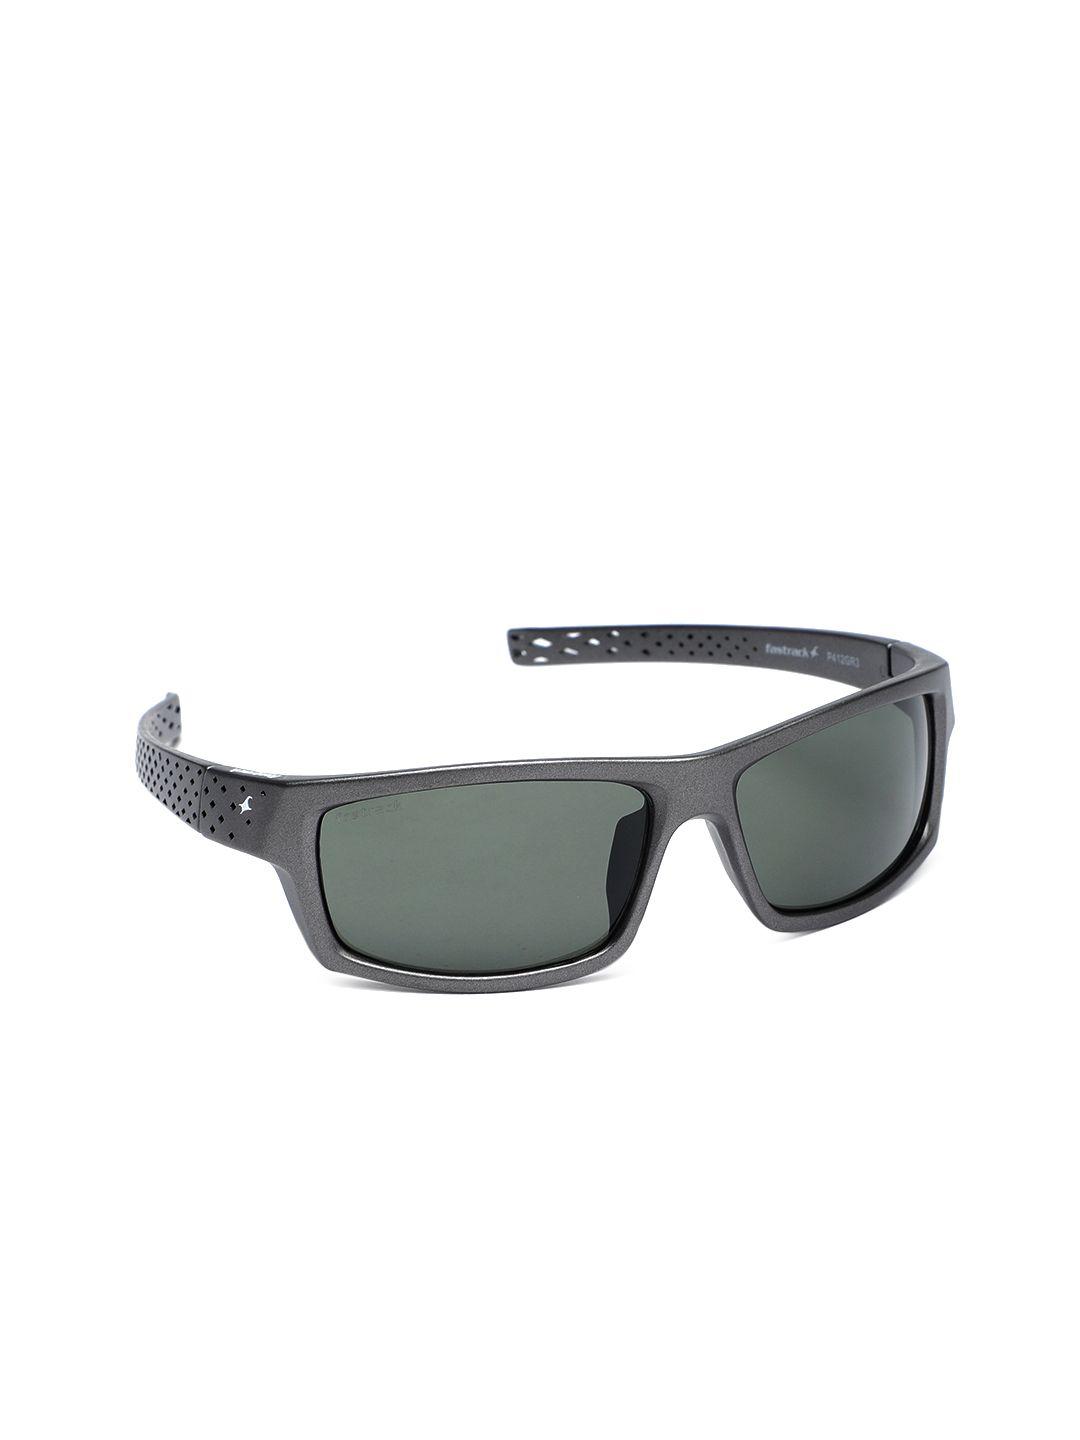 fastrack men green rectangle sunglasses p412gr3